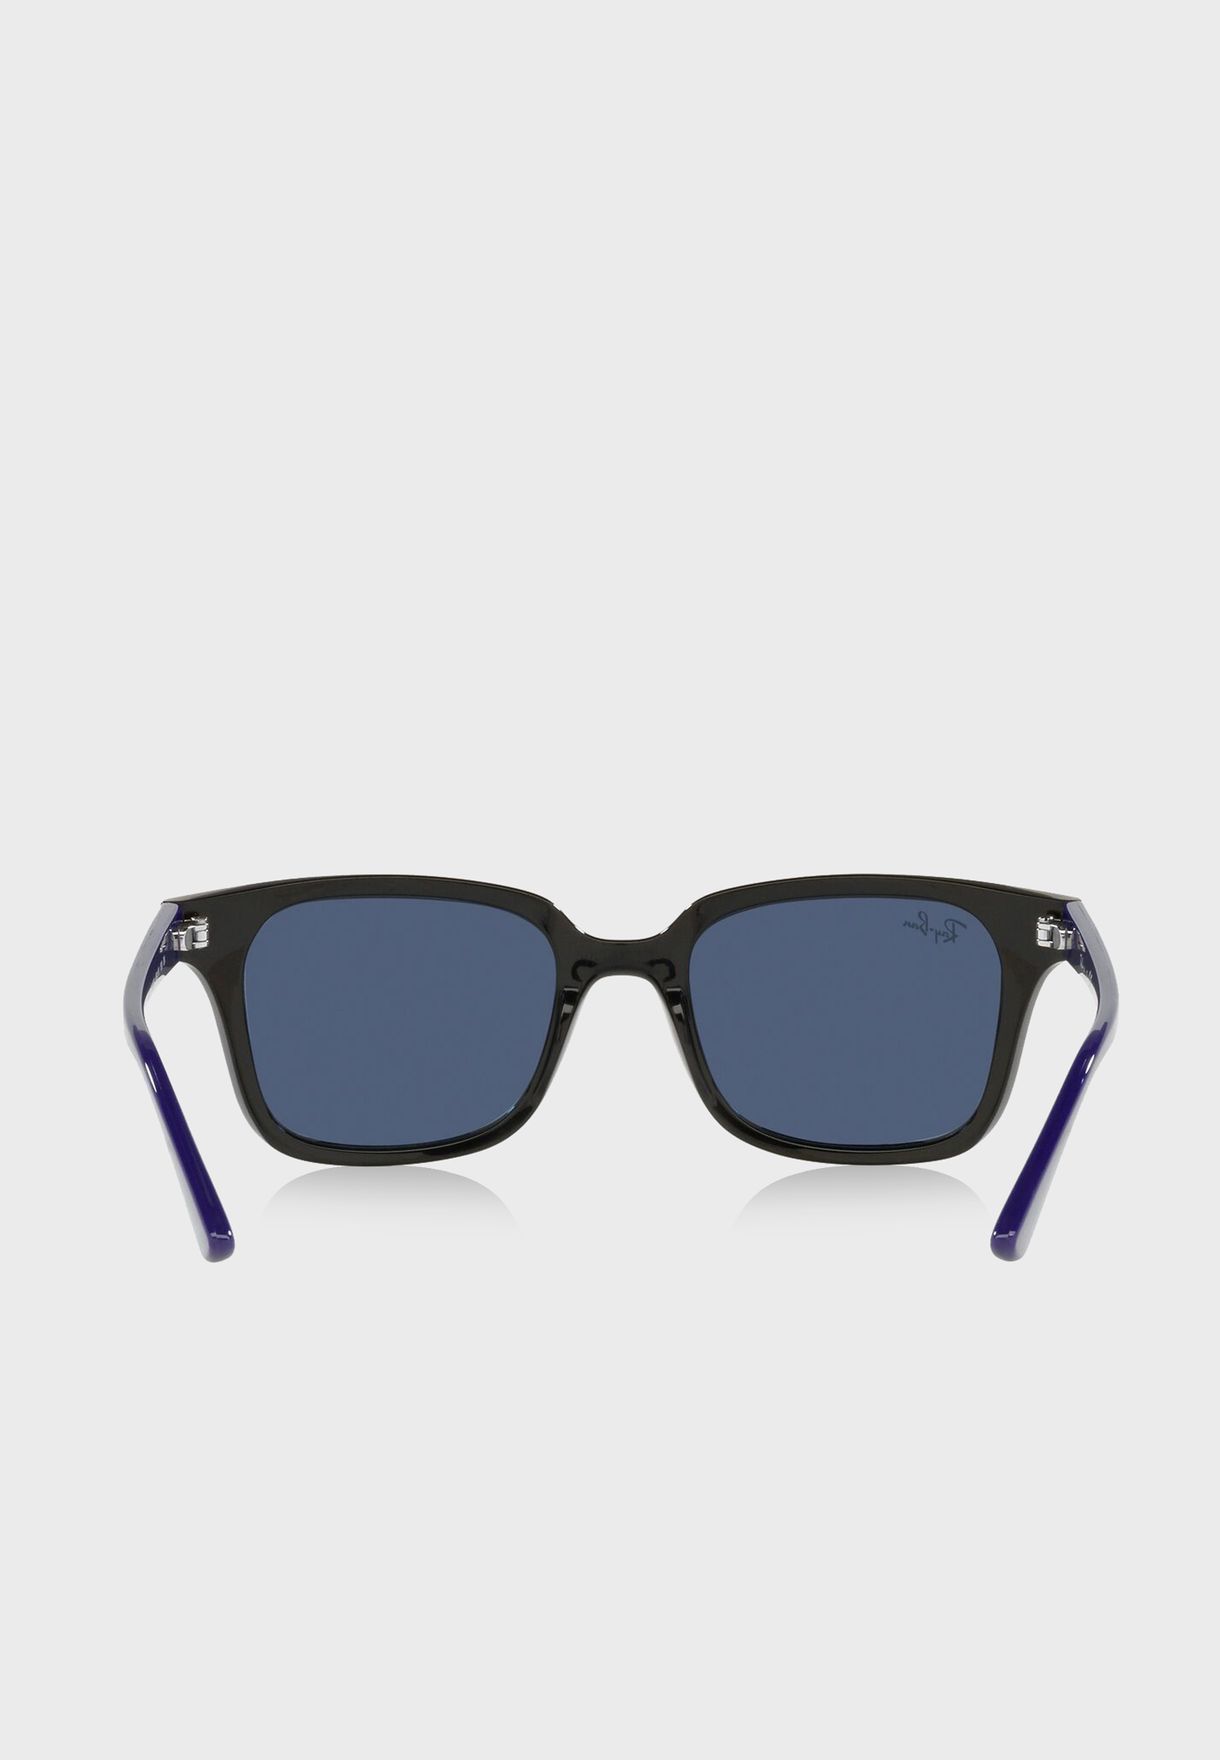 0Rj9071S Wayfarers Sunglasses